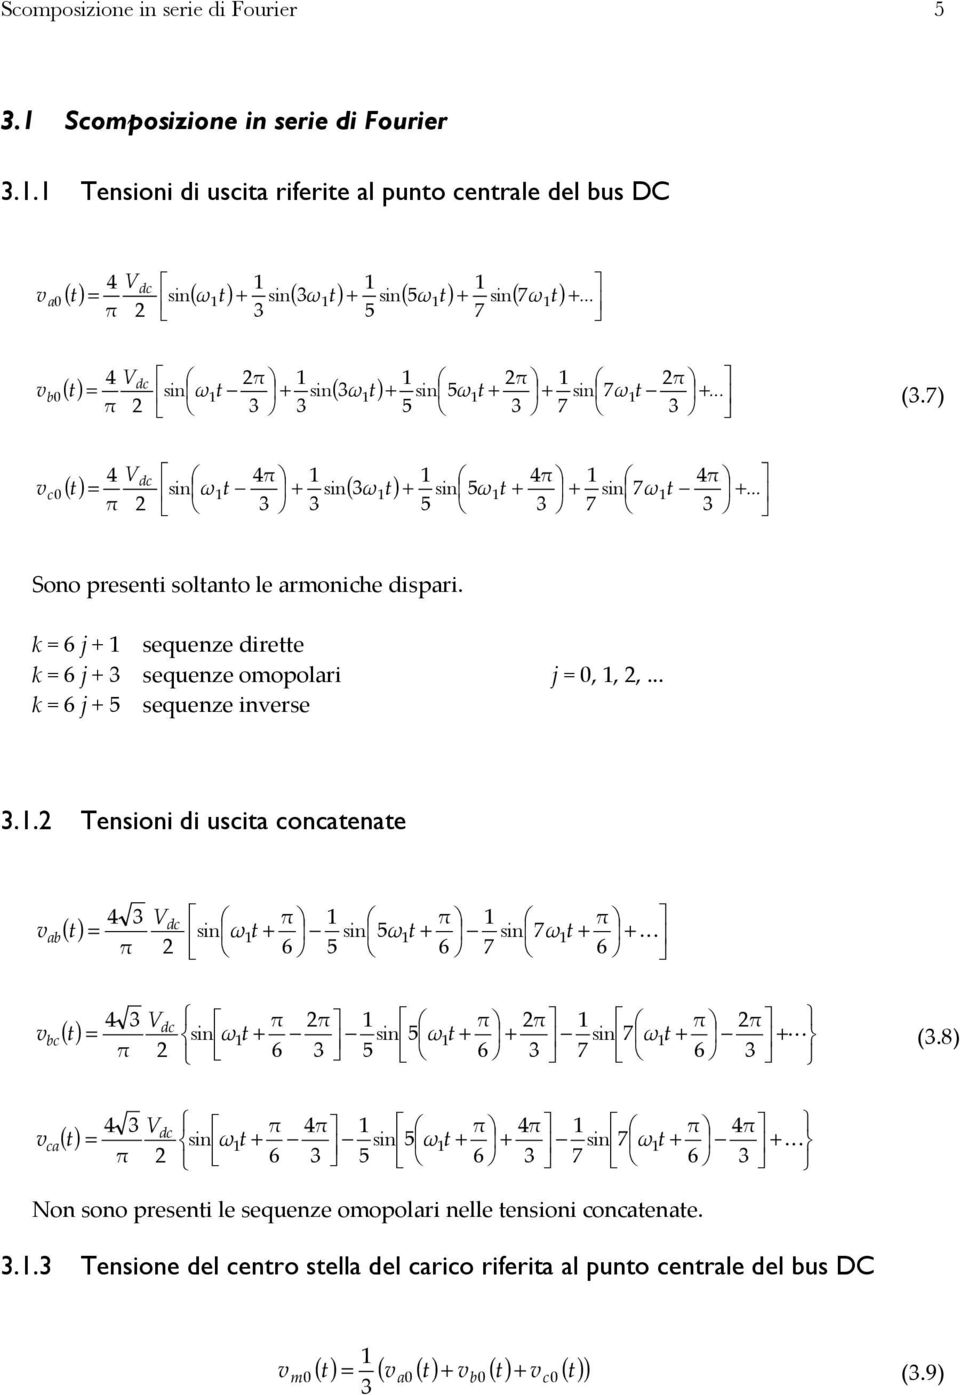 ) Sono preseni solano le armoniche ispari. k j sequenze iree k j sequenze omopolari j,,,... k j sequenze inerse.